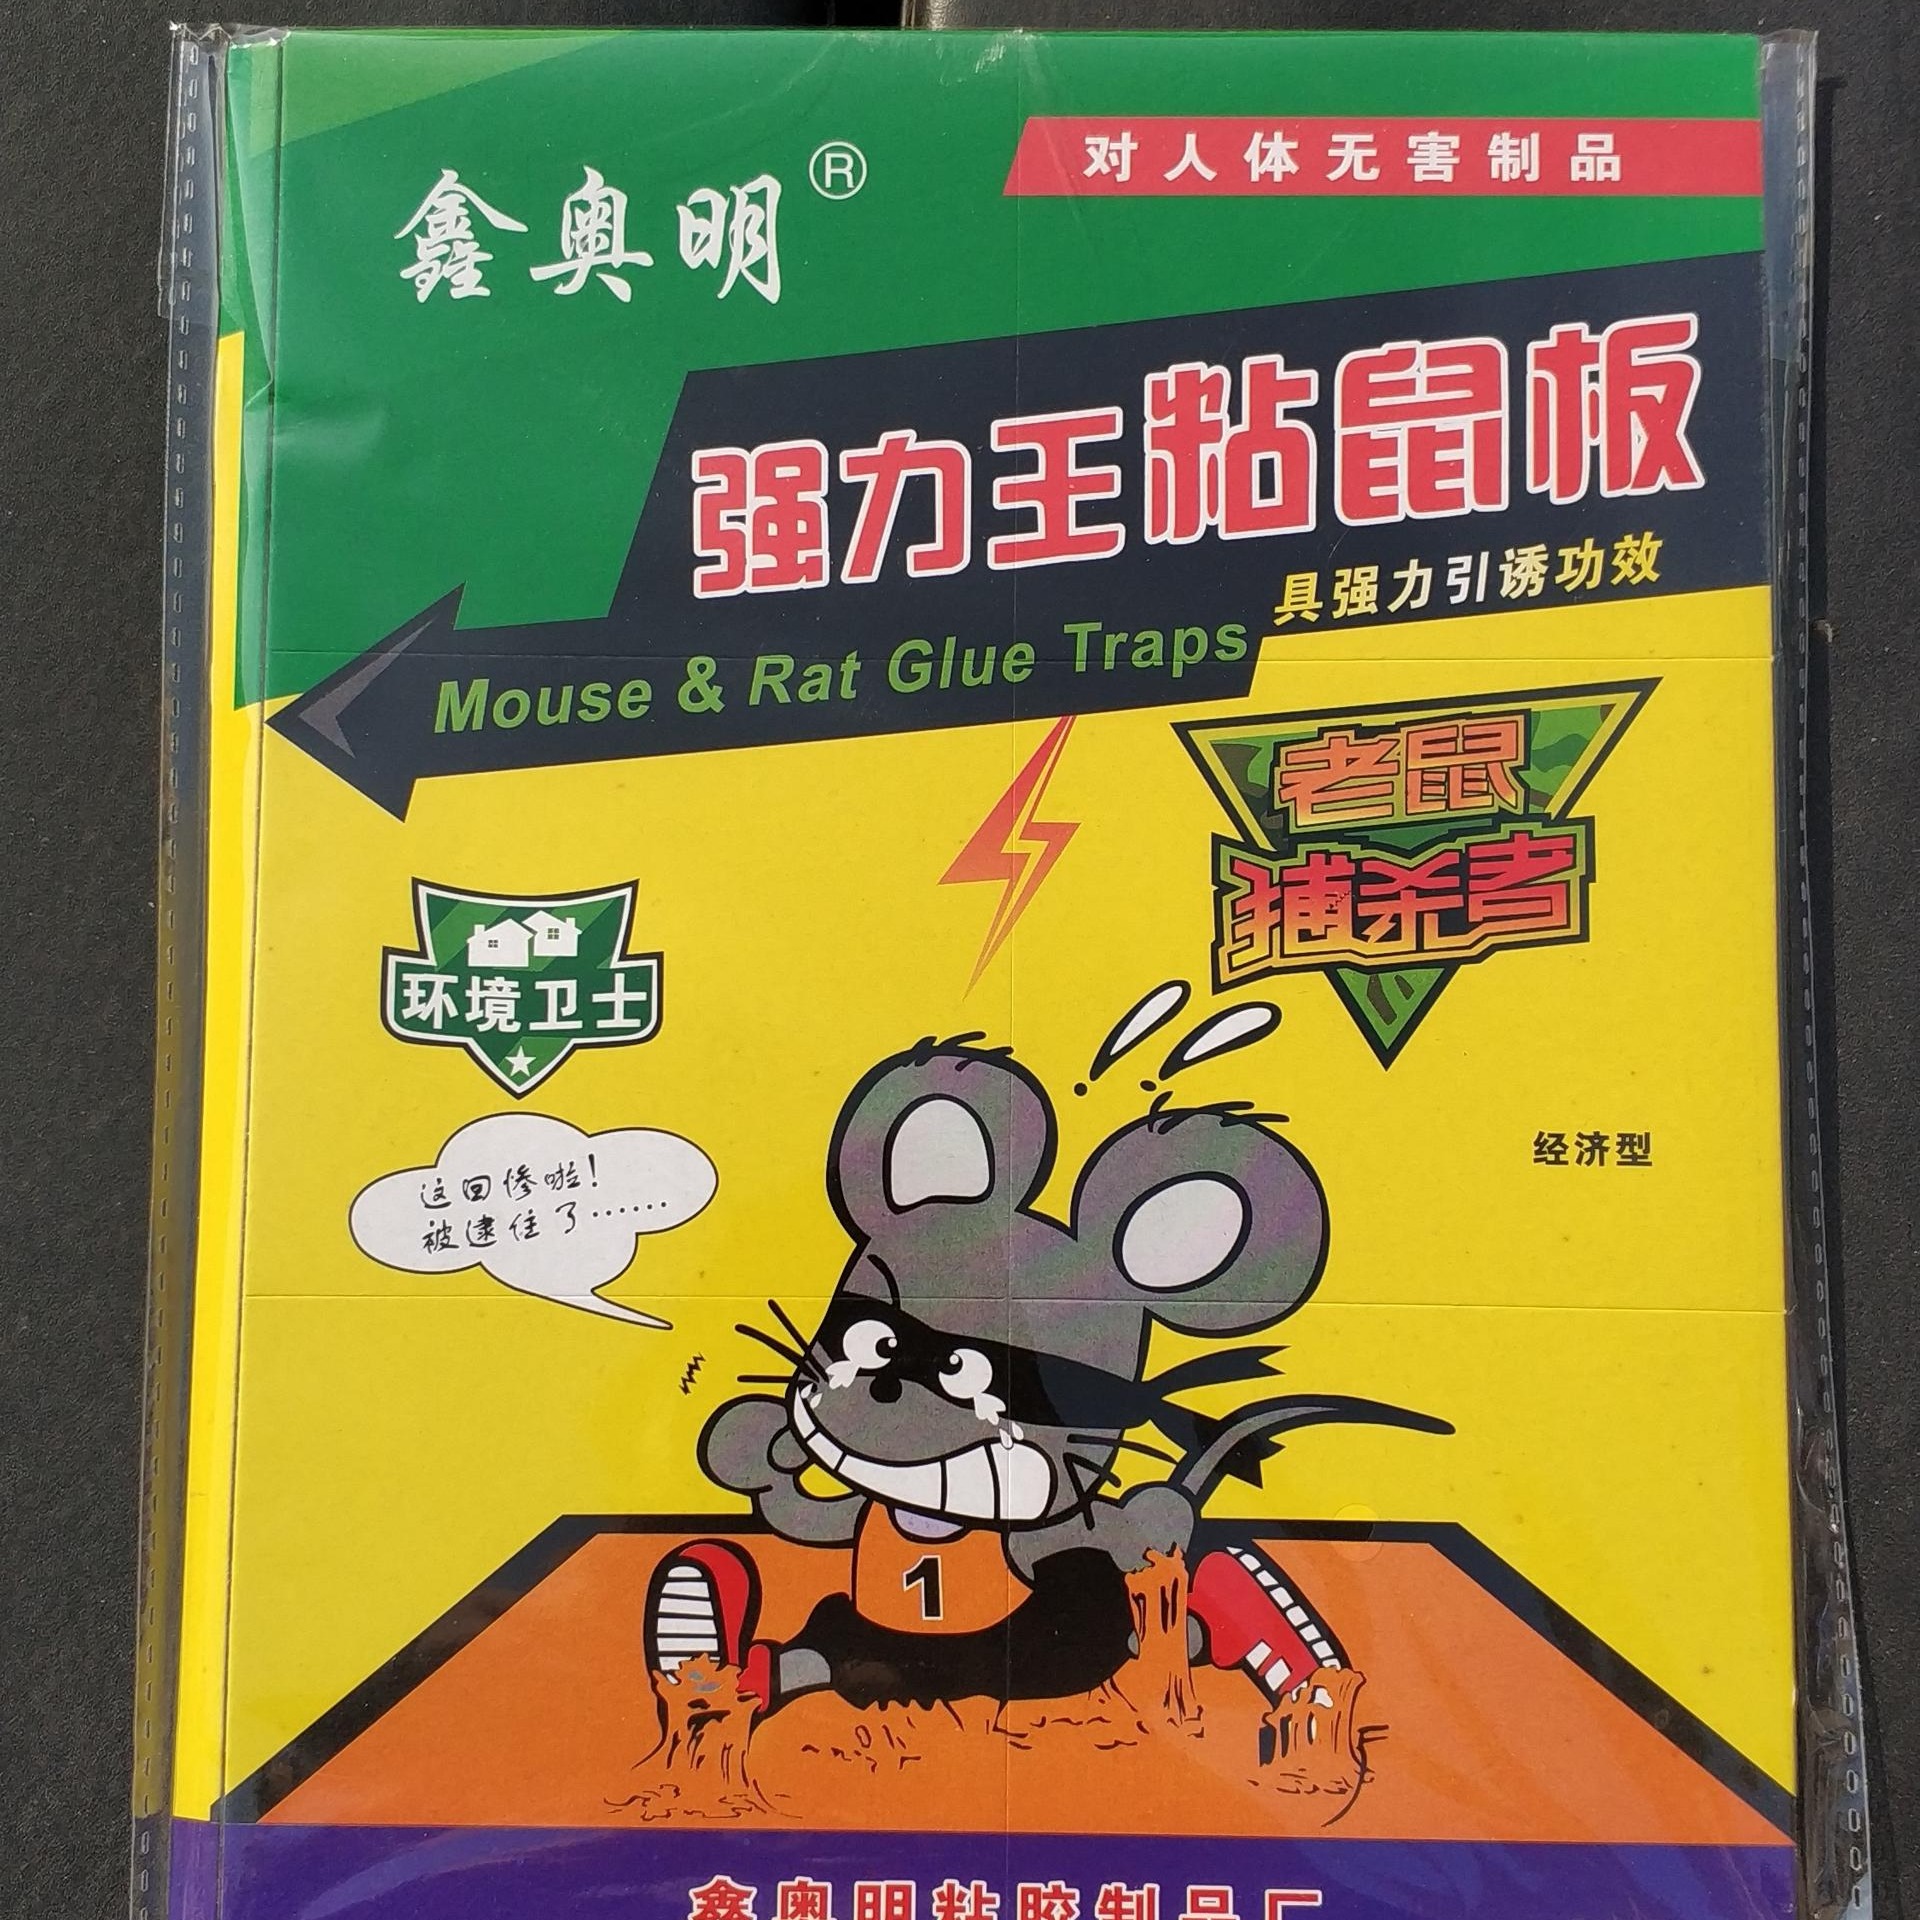 鑫奥明 西安粘鼠板 粘鼠板生产厂家 防蚊、防蛀、灭鼠杀虫用品 粘鼠板5